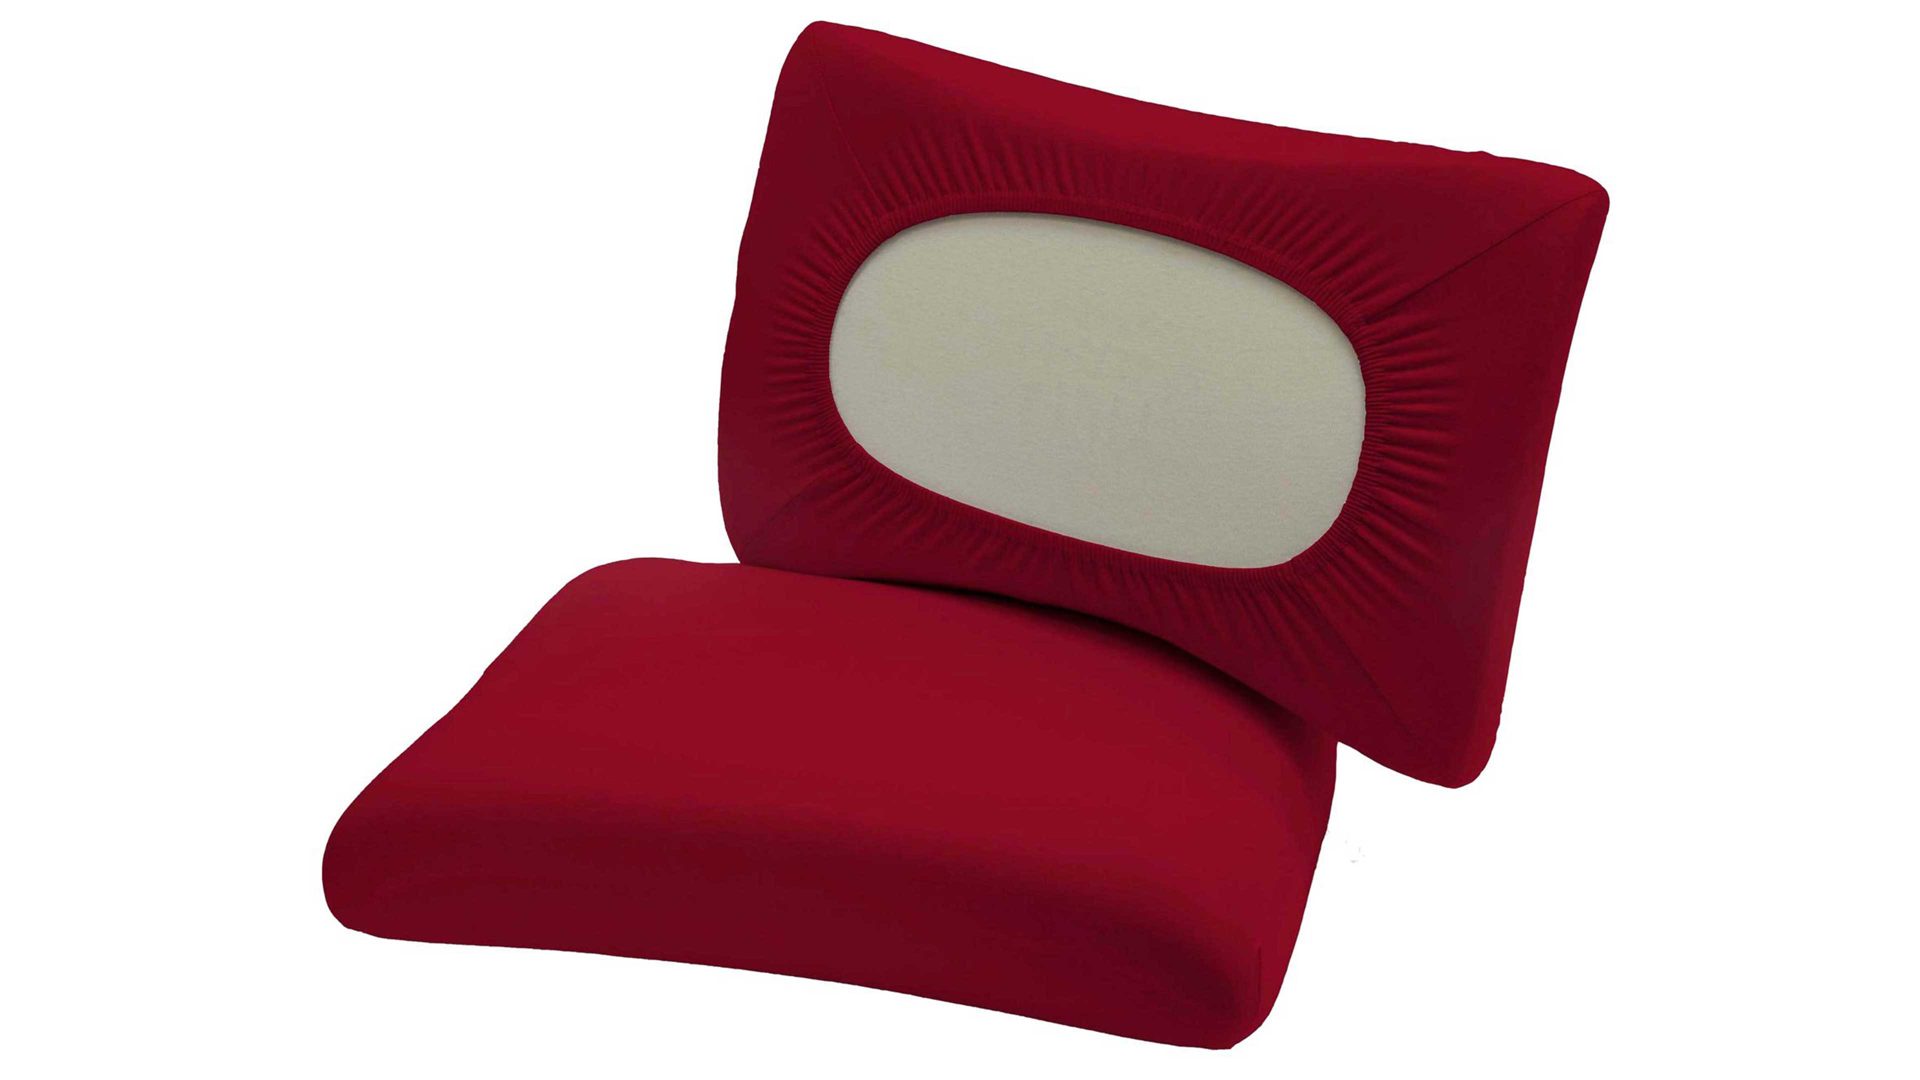 Kissenbezug /-hülle H.g. hahn haustextilien aus Stoff in Rot HAHN Universal-Kissenbezug rote Baumwolle - Größe S-XL